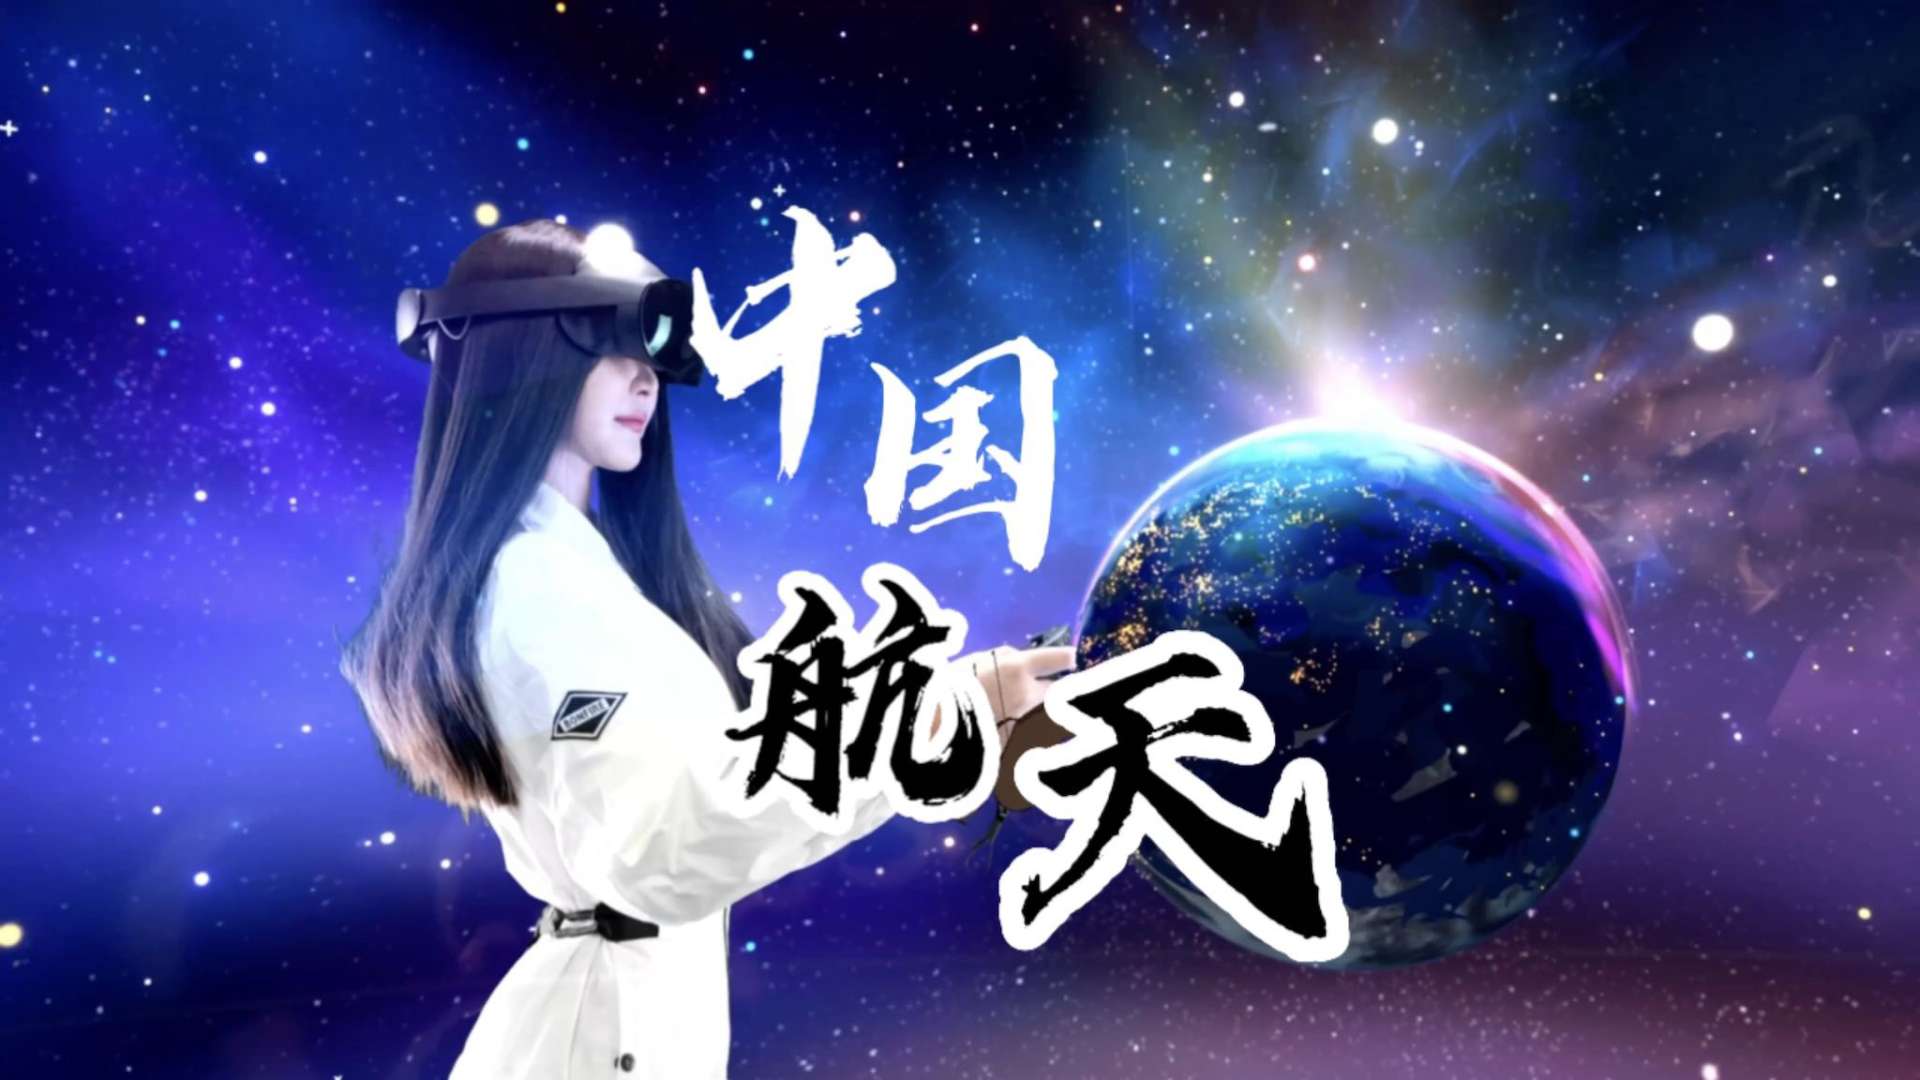 【央视新闻x毛思懿】VR绘画 中国空间站